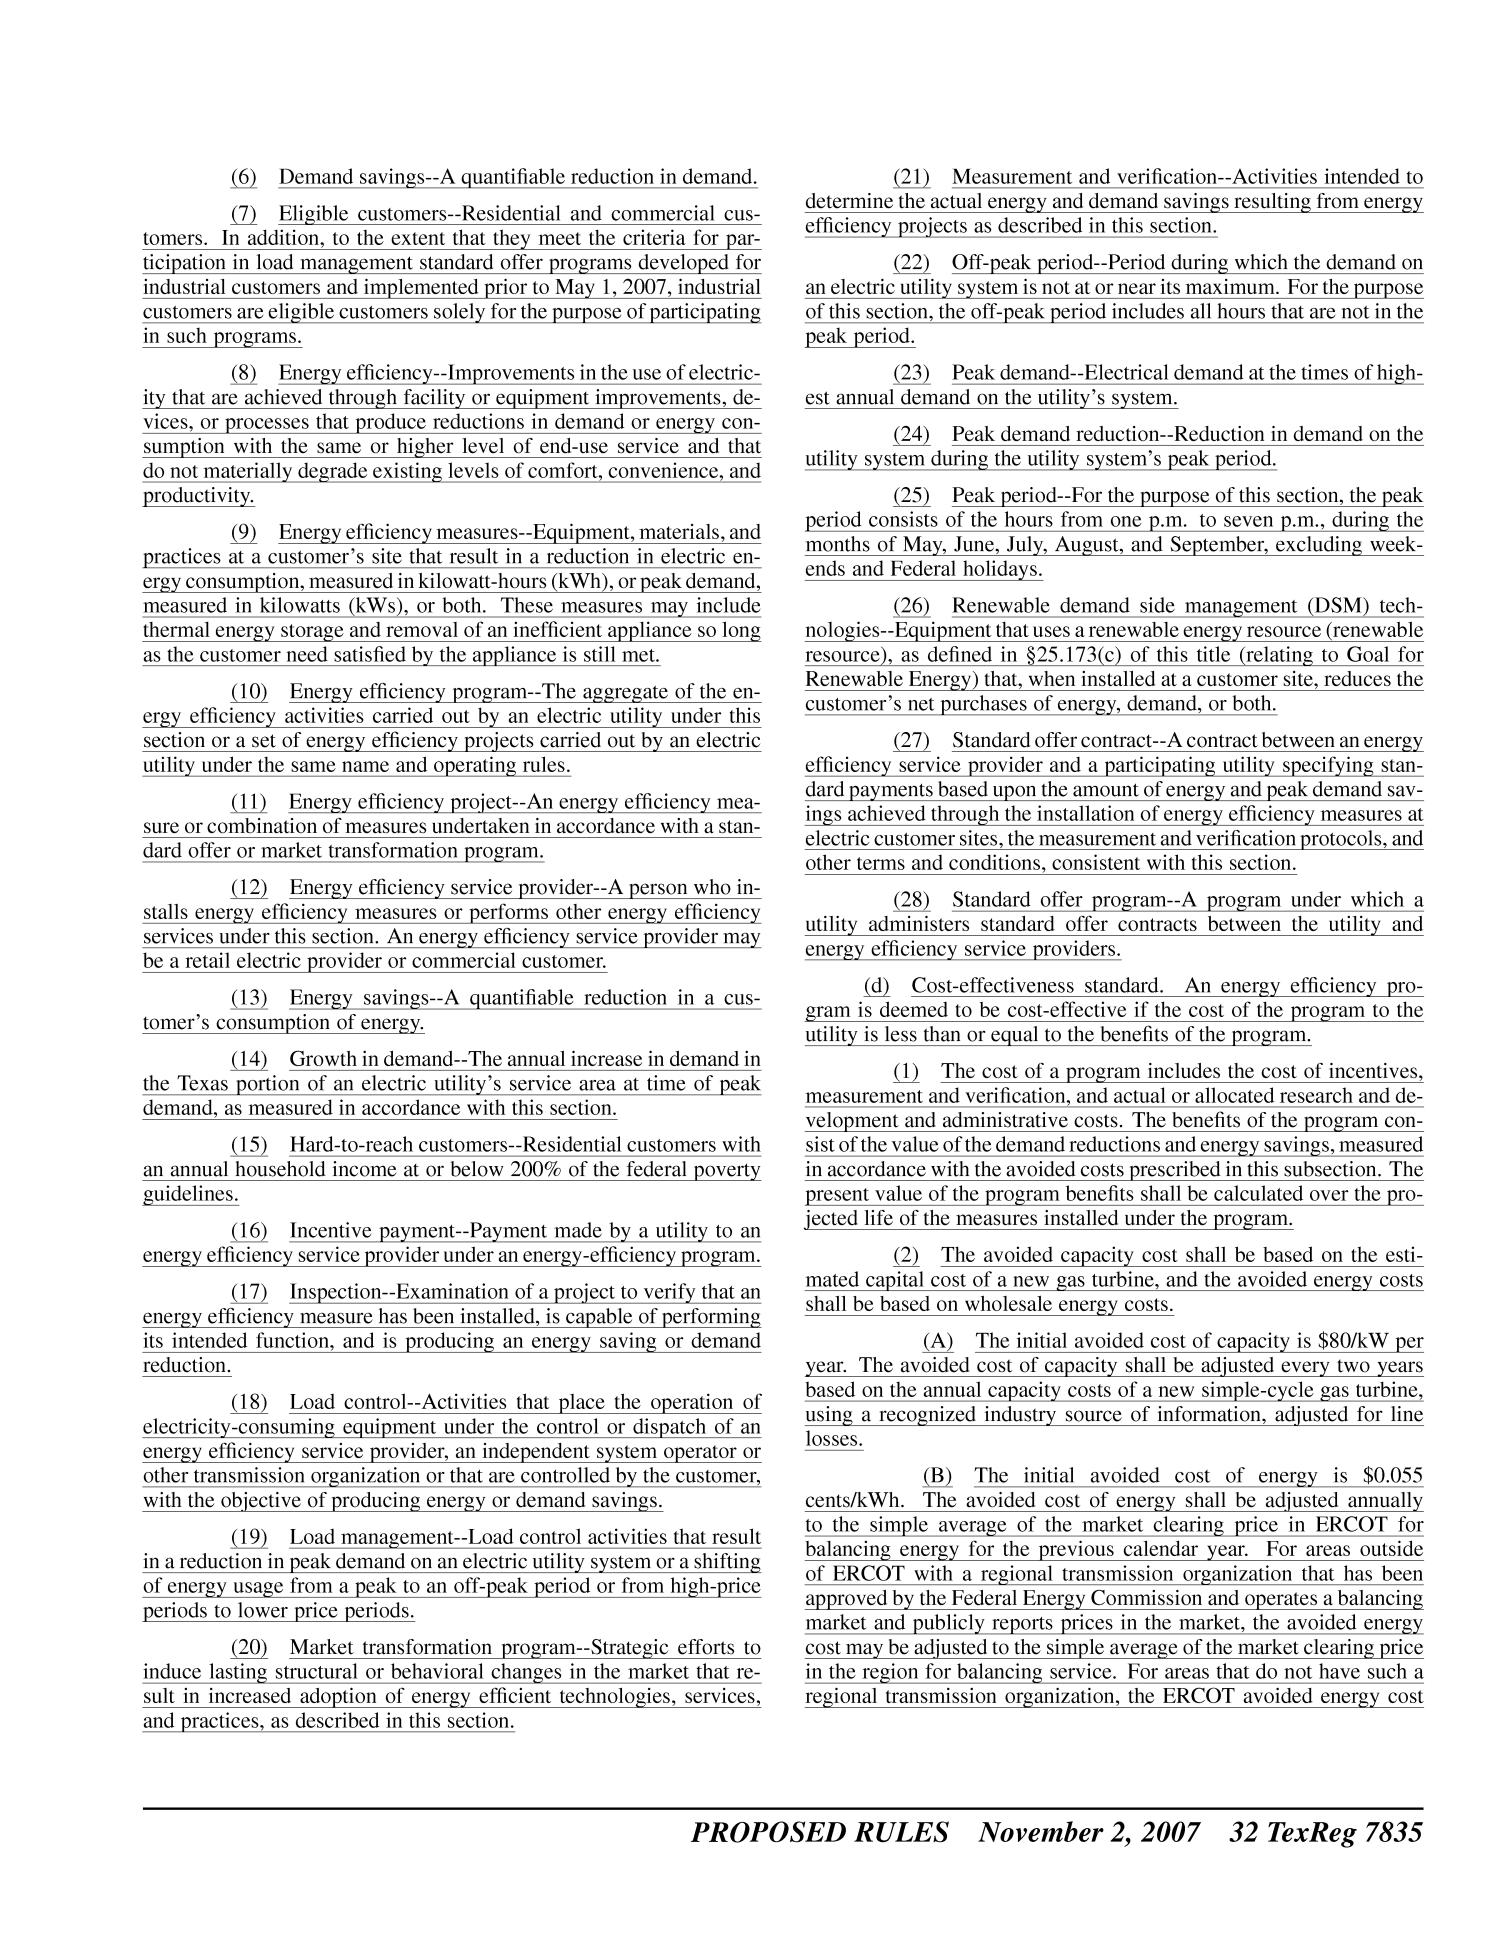 Texas Register, Volume 32, Number 44, Pages 7777-8060, November 2, 2007
                                                
                                                    7835
                                                